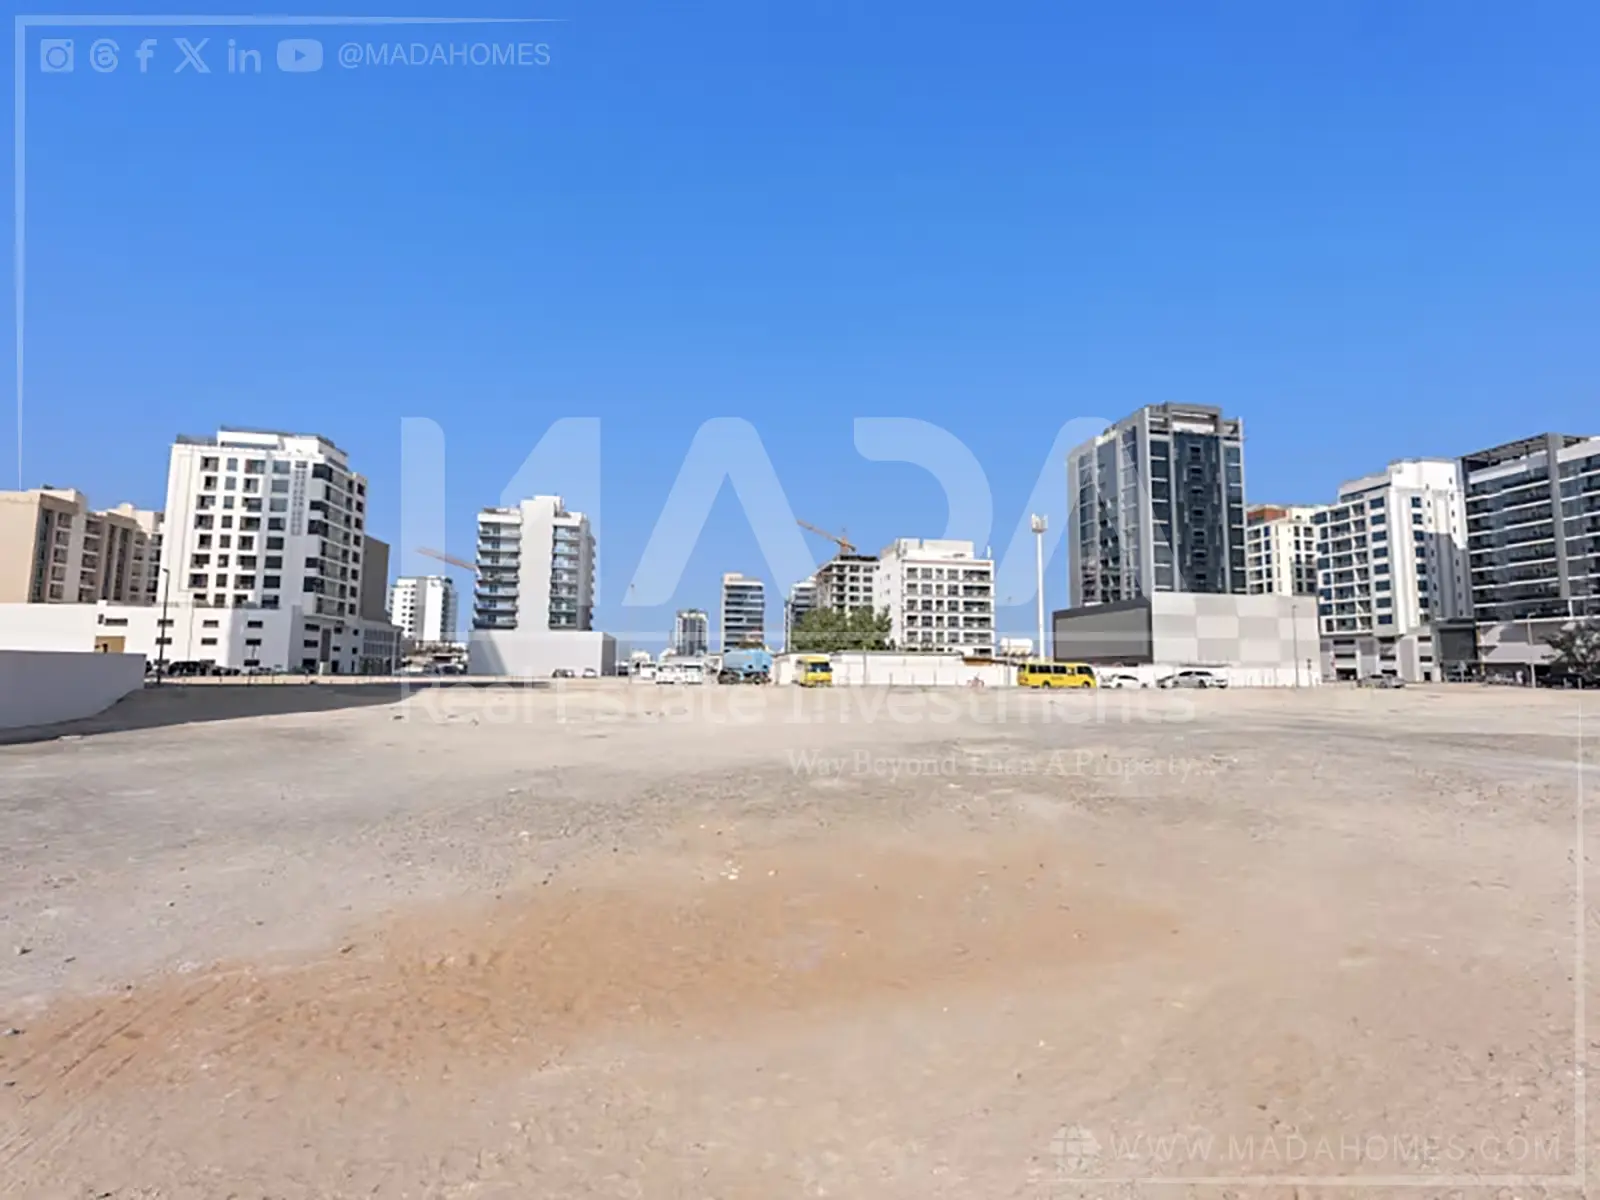 Mada 公司在迪拜出售土地